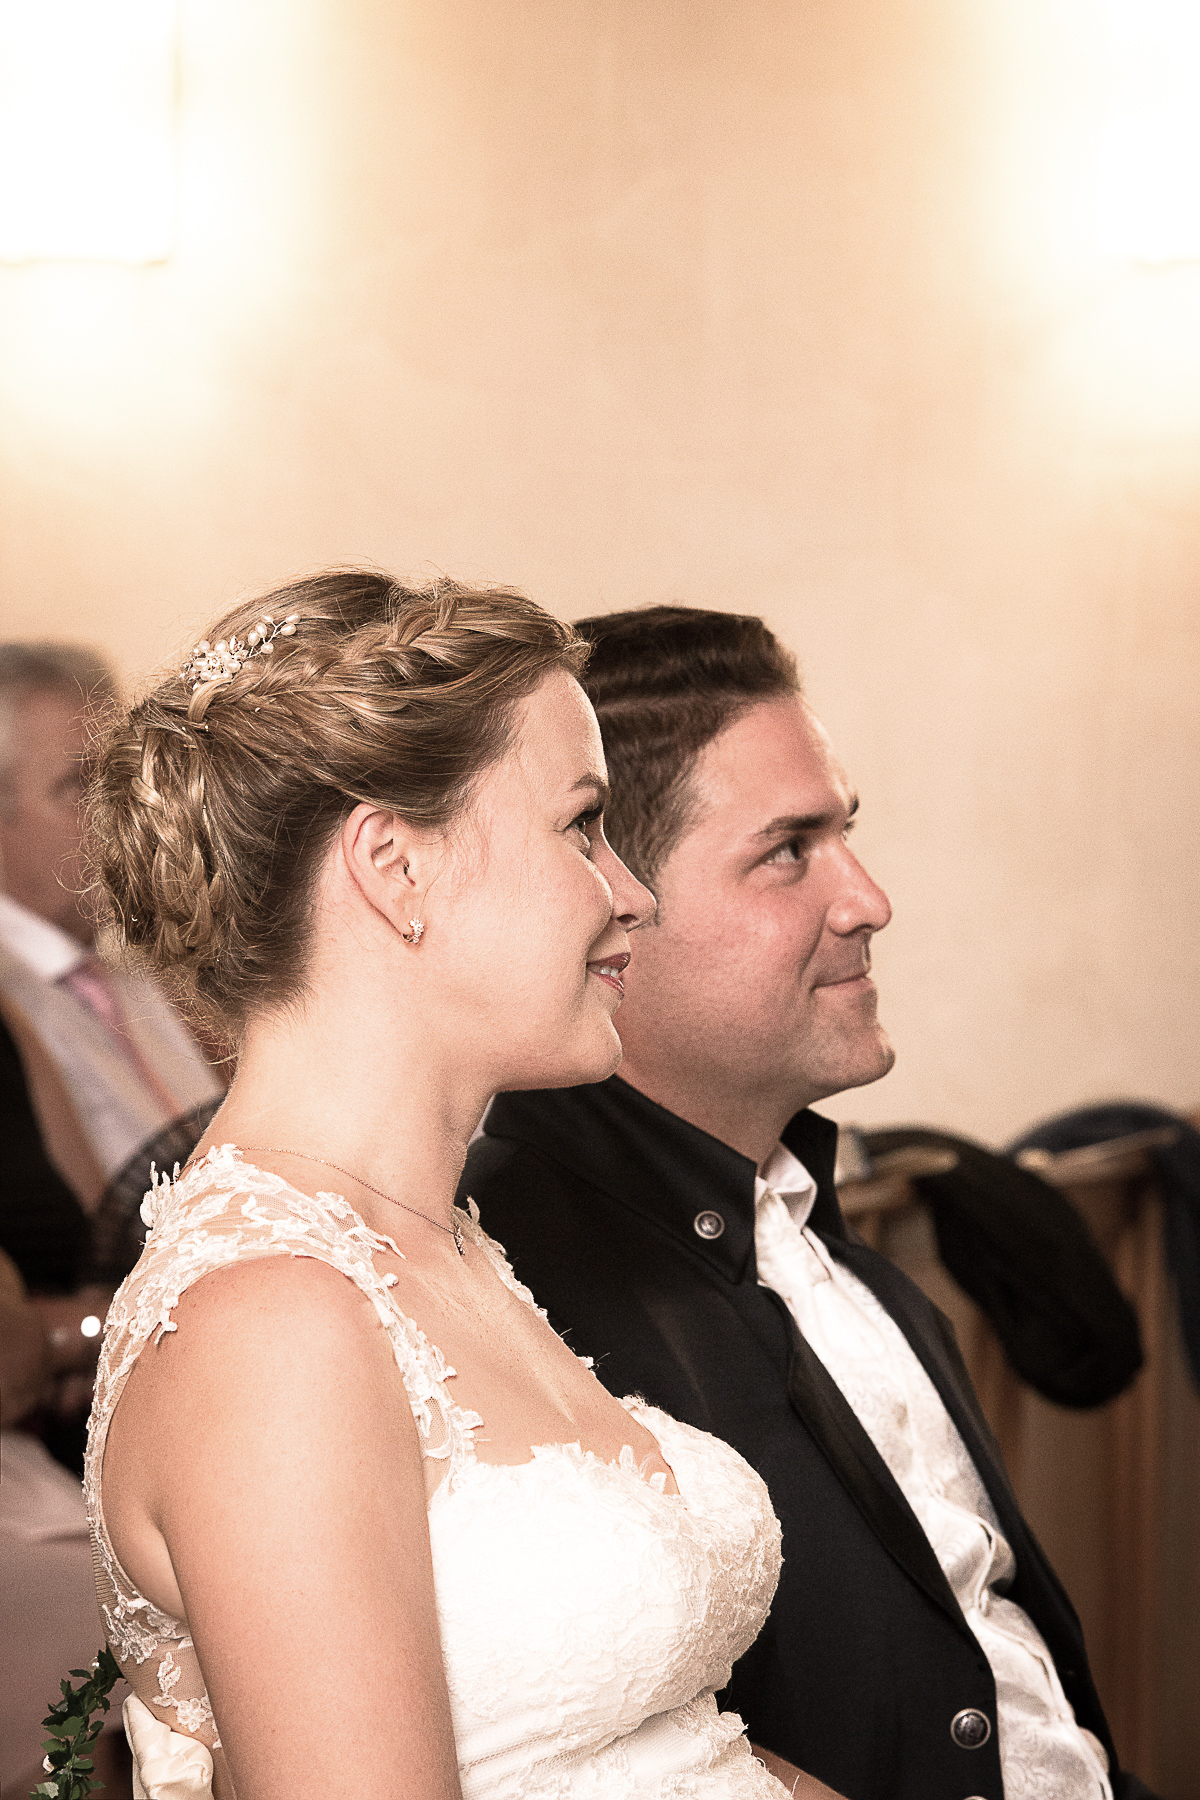 Die Braut und der Bräutigam hören während der kirchlichen Trauung dem Priester zu und haben dabei ein Lächeln im Gesicht.